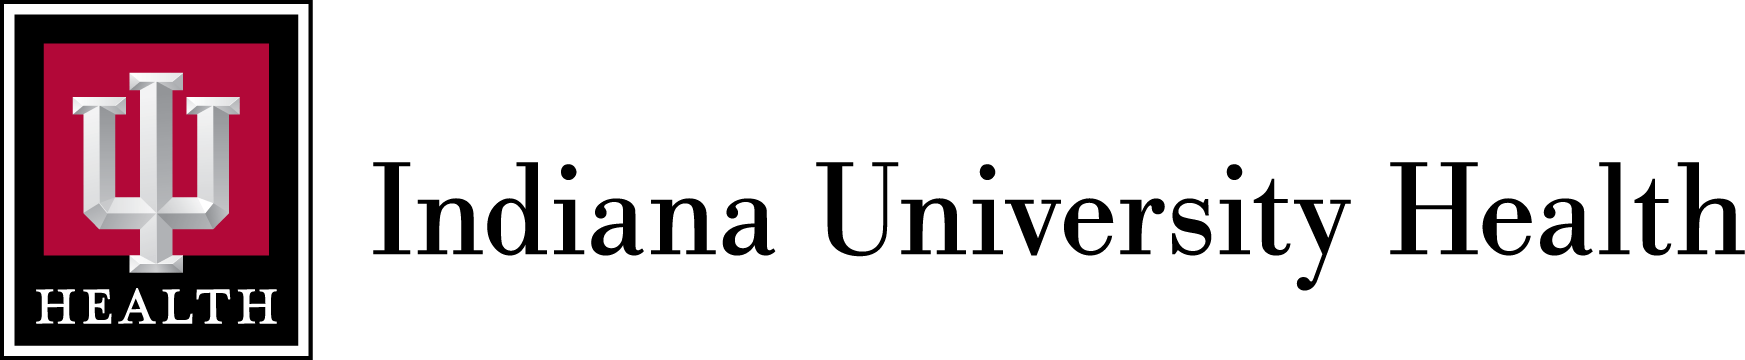 IU School of Medicine Logo - LogoDix